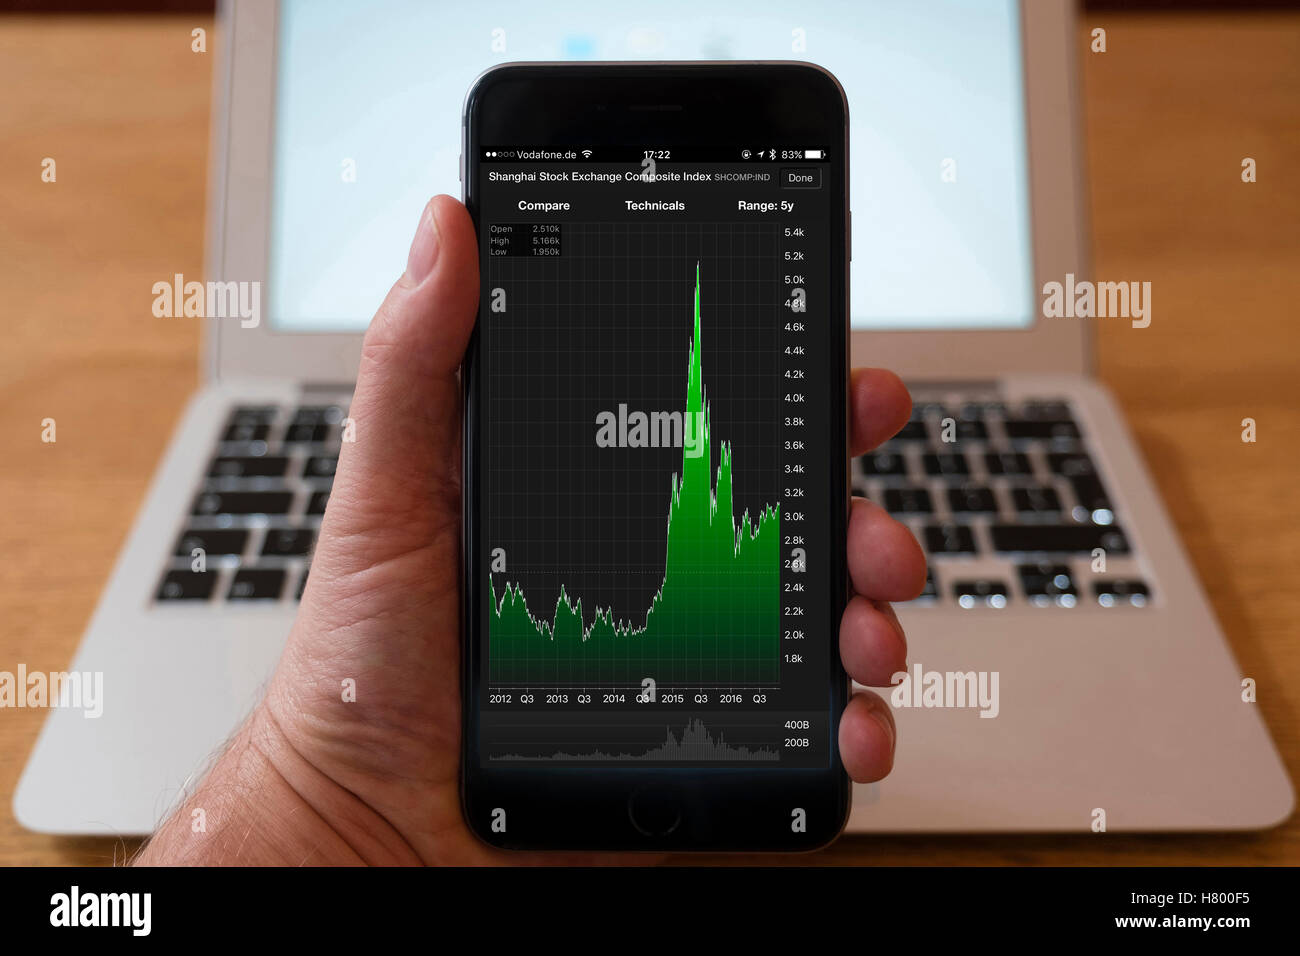 Verwenden iPhone Smartphone zum Aktienmarkt Leistungsdiagramm für Shanghai Stock Exchange Composite Index anzeigen, Stockfoto